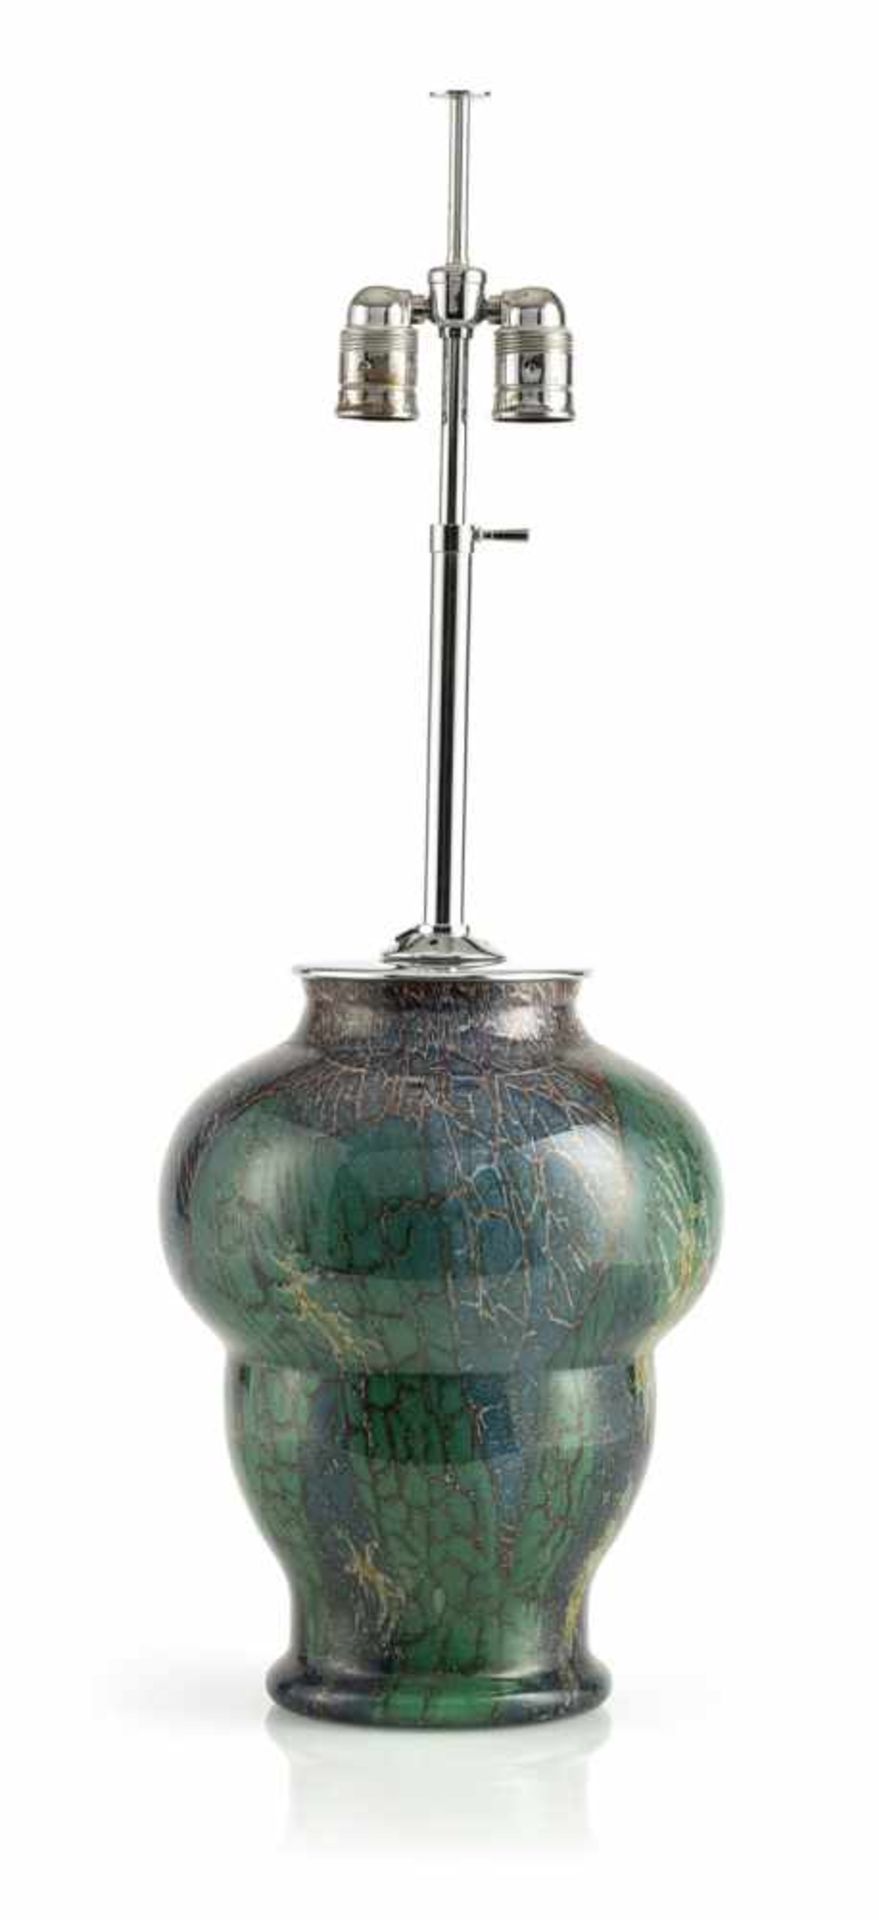 AN "IKORA-KRISTALL" GLASS LAMP, WMF Geislingen, 1930ies. Design by Karl Wiedmann in 1928.